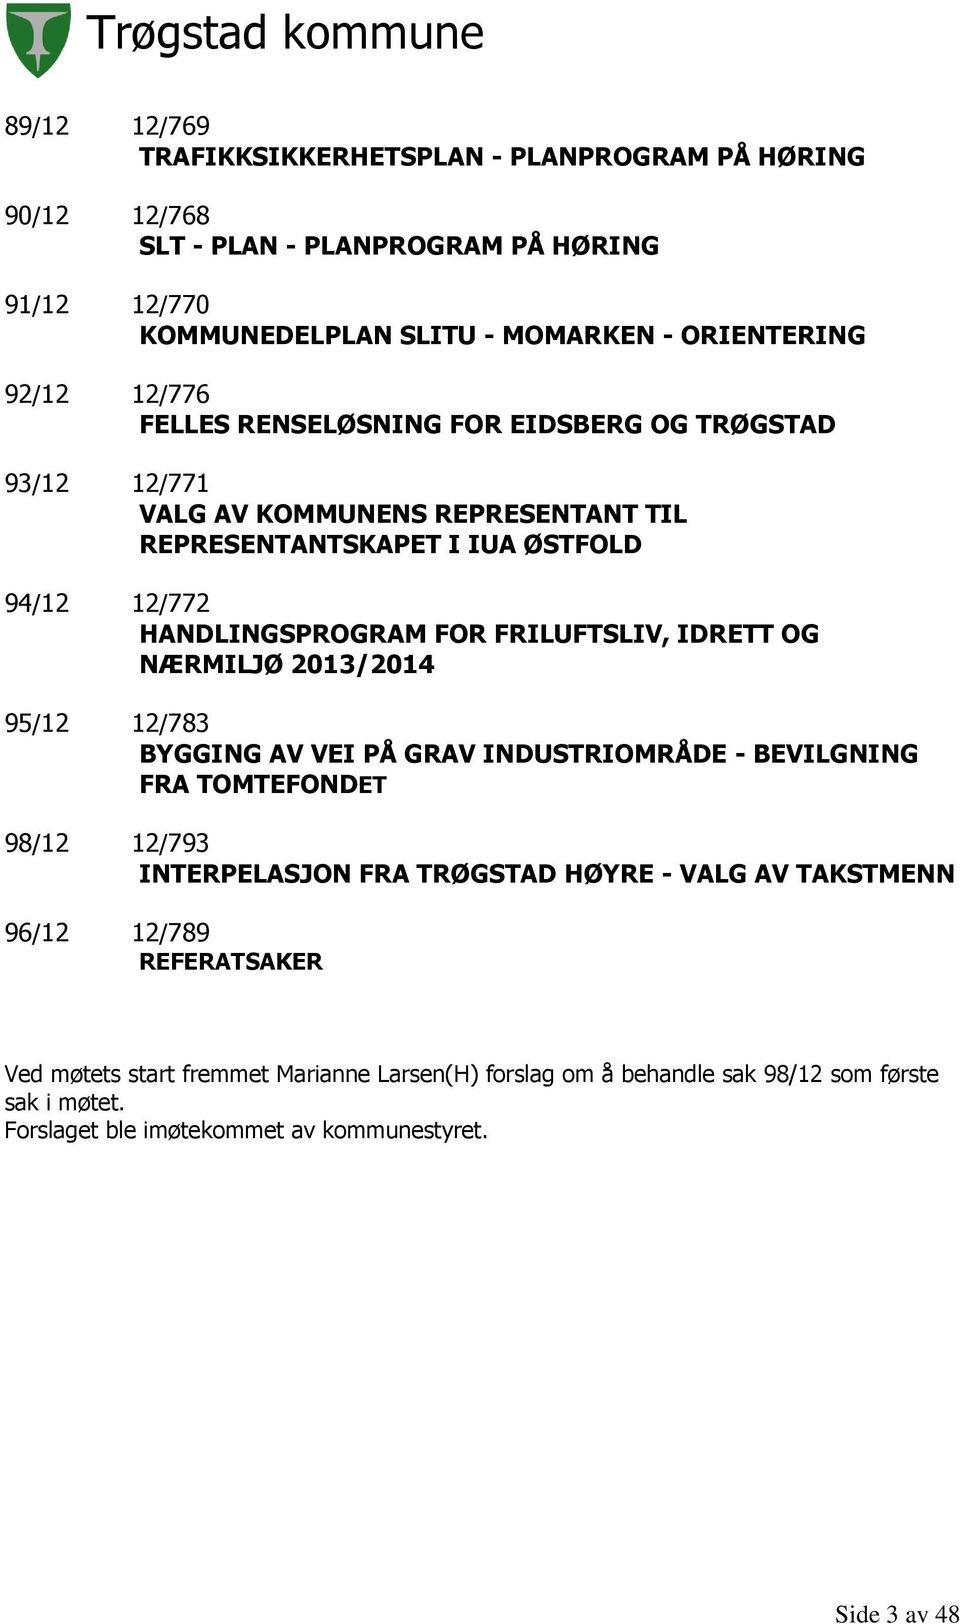 FRILUFTSLIV, IDRETT OG NÆRMILJØ 2013/2014 95/12 12/783 BYGGING AV VEI PÅ GRAV INDUSTRIOMRÅDE - BEVILGNING FRA TOMTEFONDET 98/12 12/793 INTERPELASJON FRA TRØGSTAD HØYRE - VALG AV